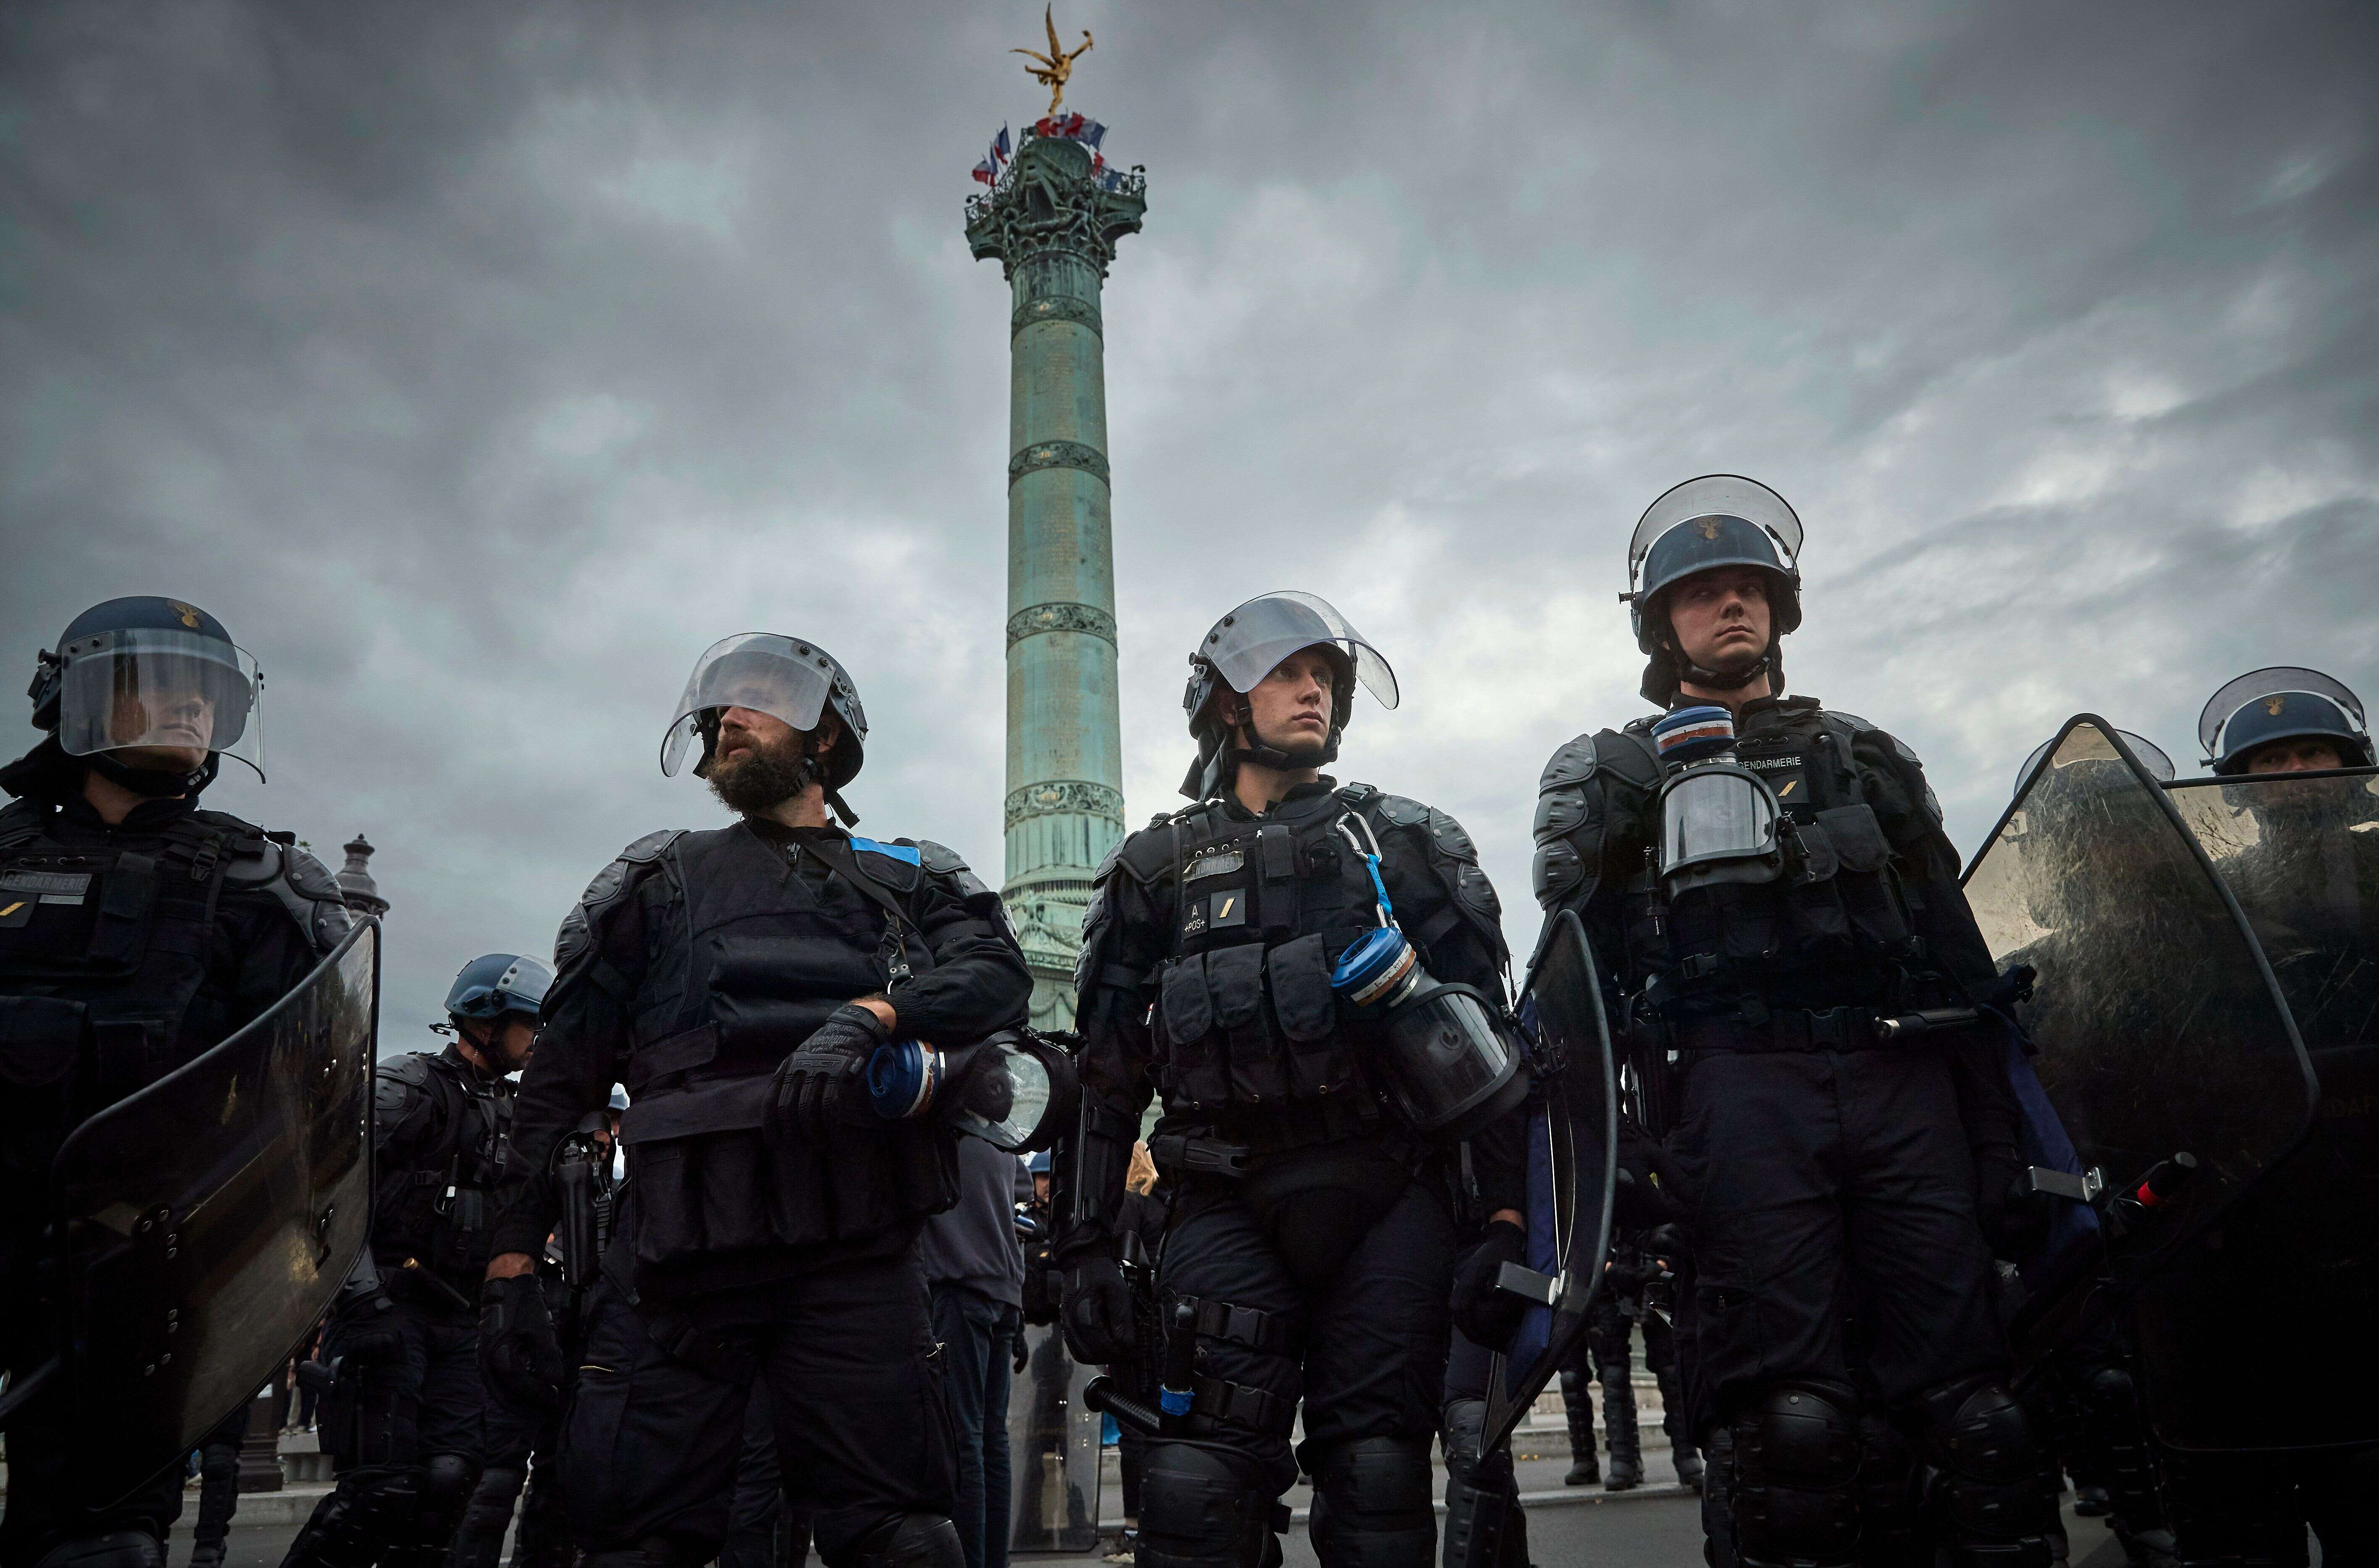 La police anti-émeute intervenant lors d'une manifestation anti-gouvernementale Place de la Bastille, le 14 juillet 2020 à Paris.